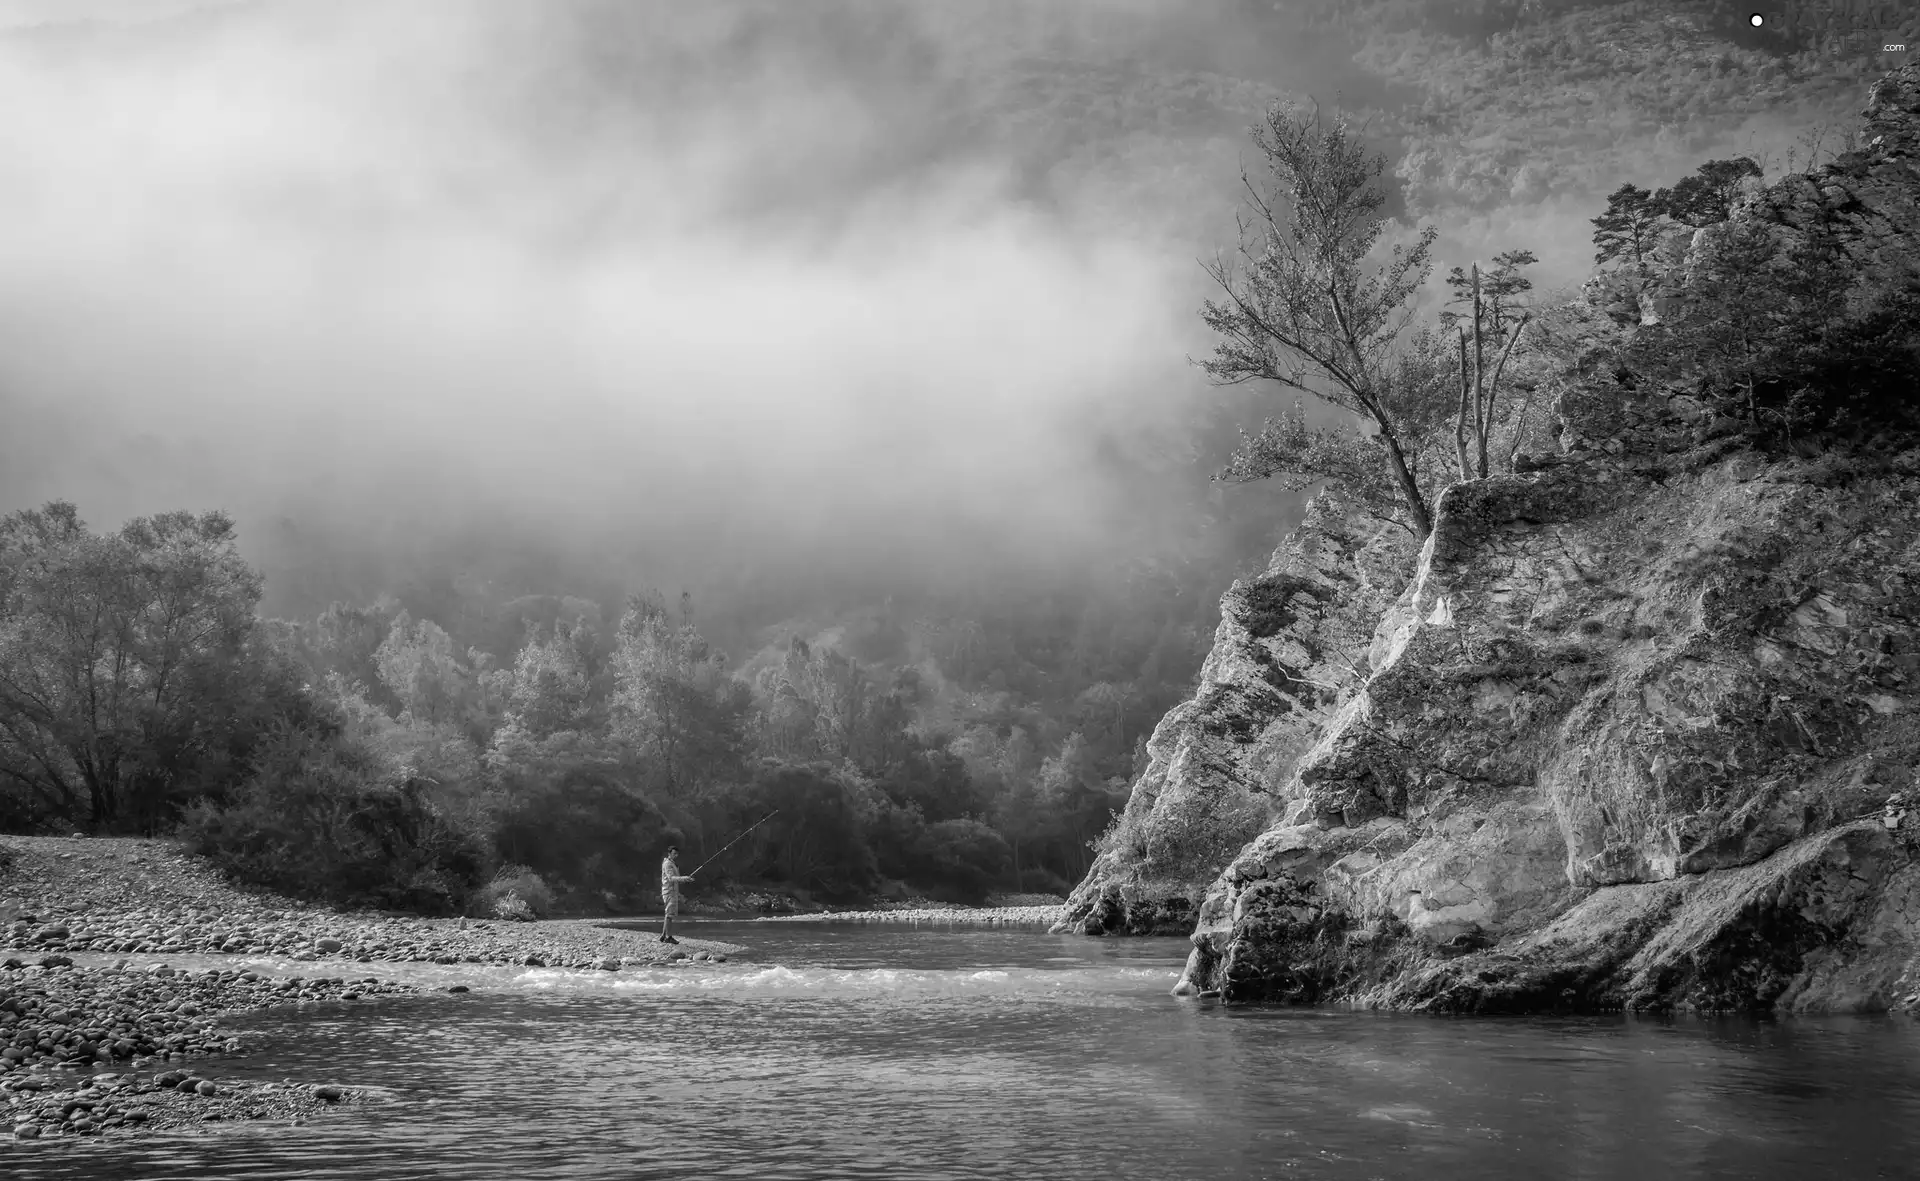 rocks, River, angler, Fog